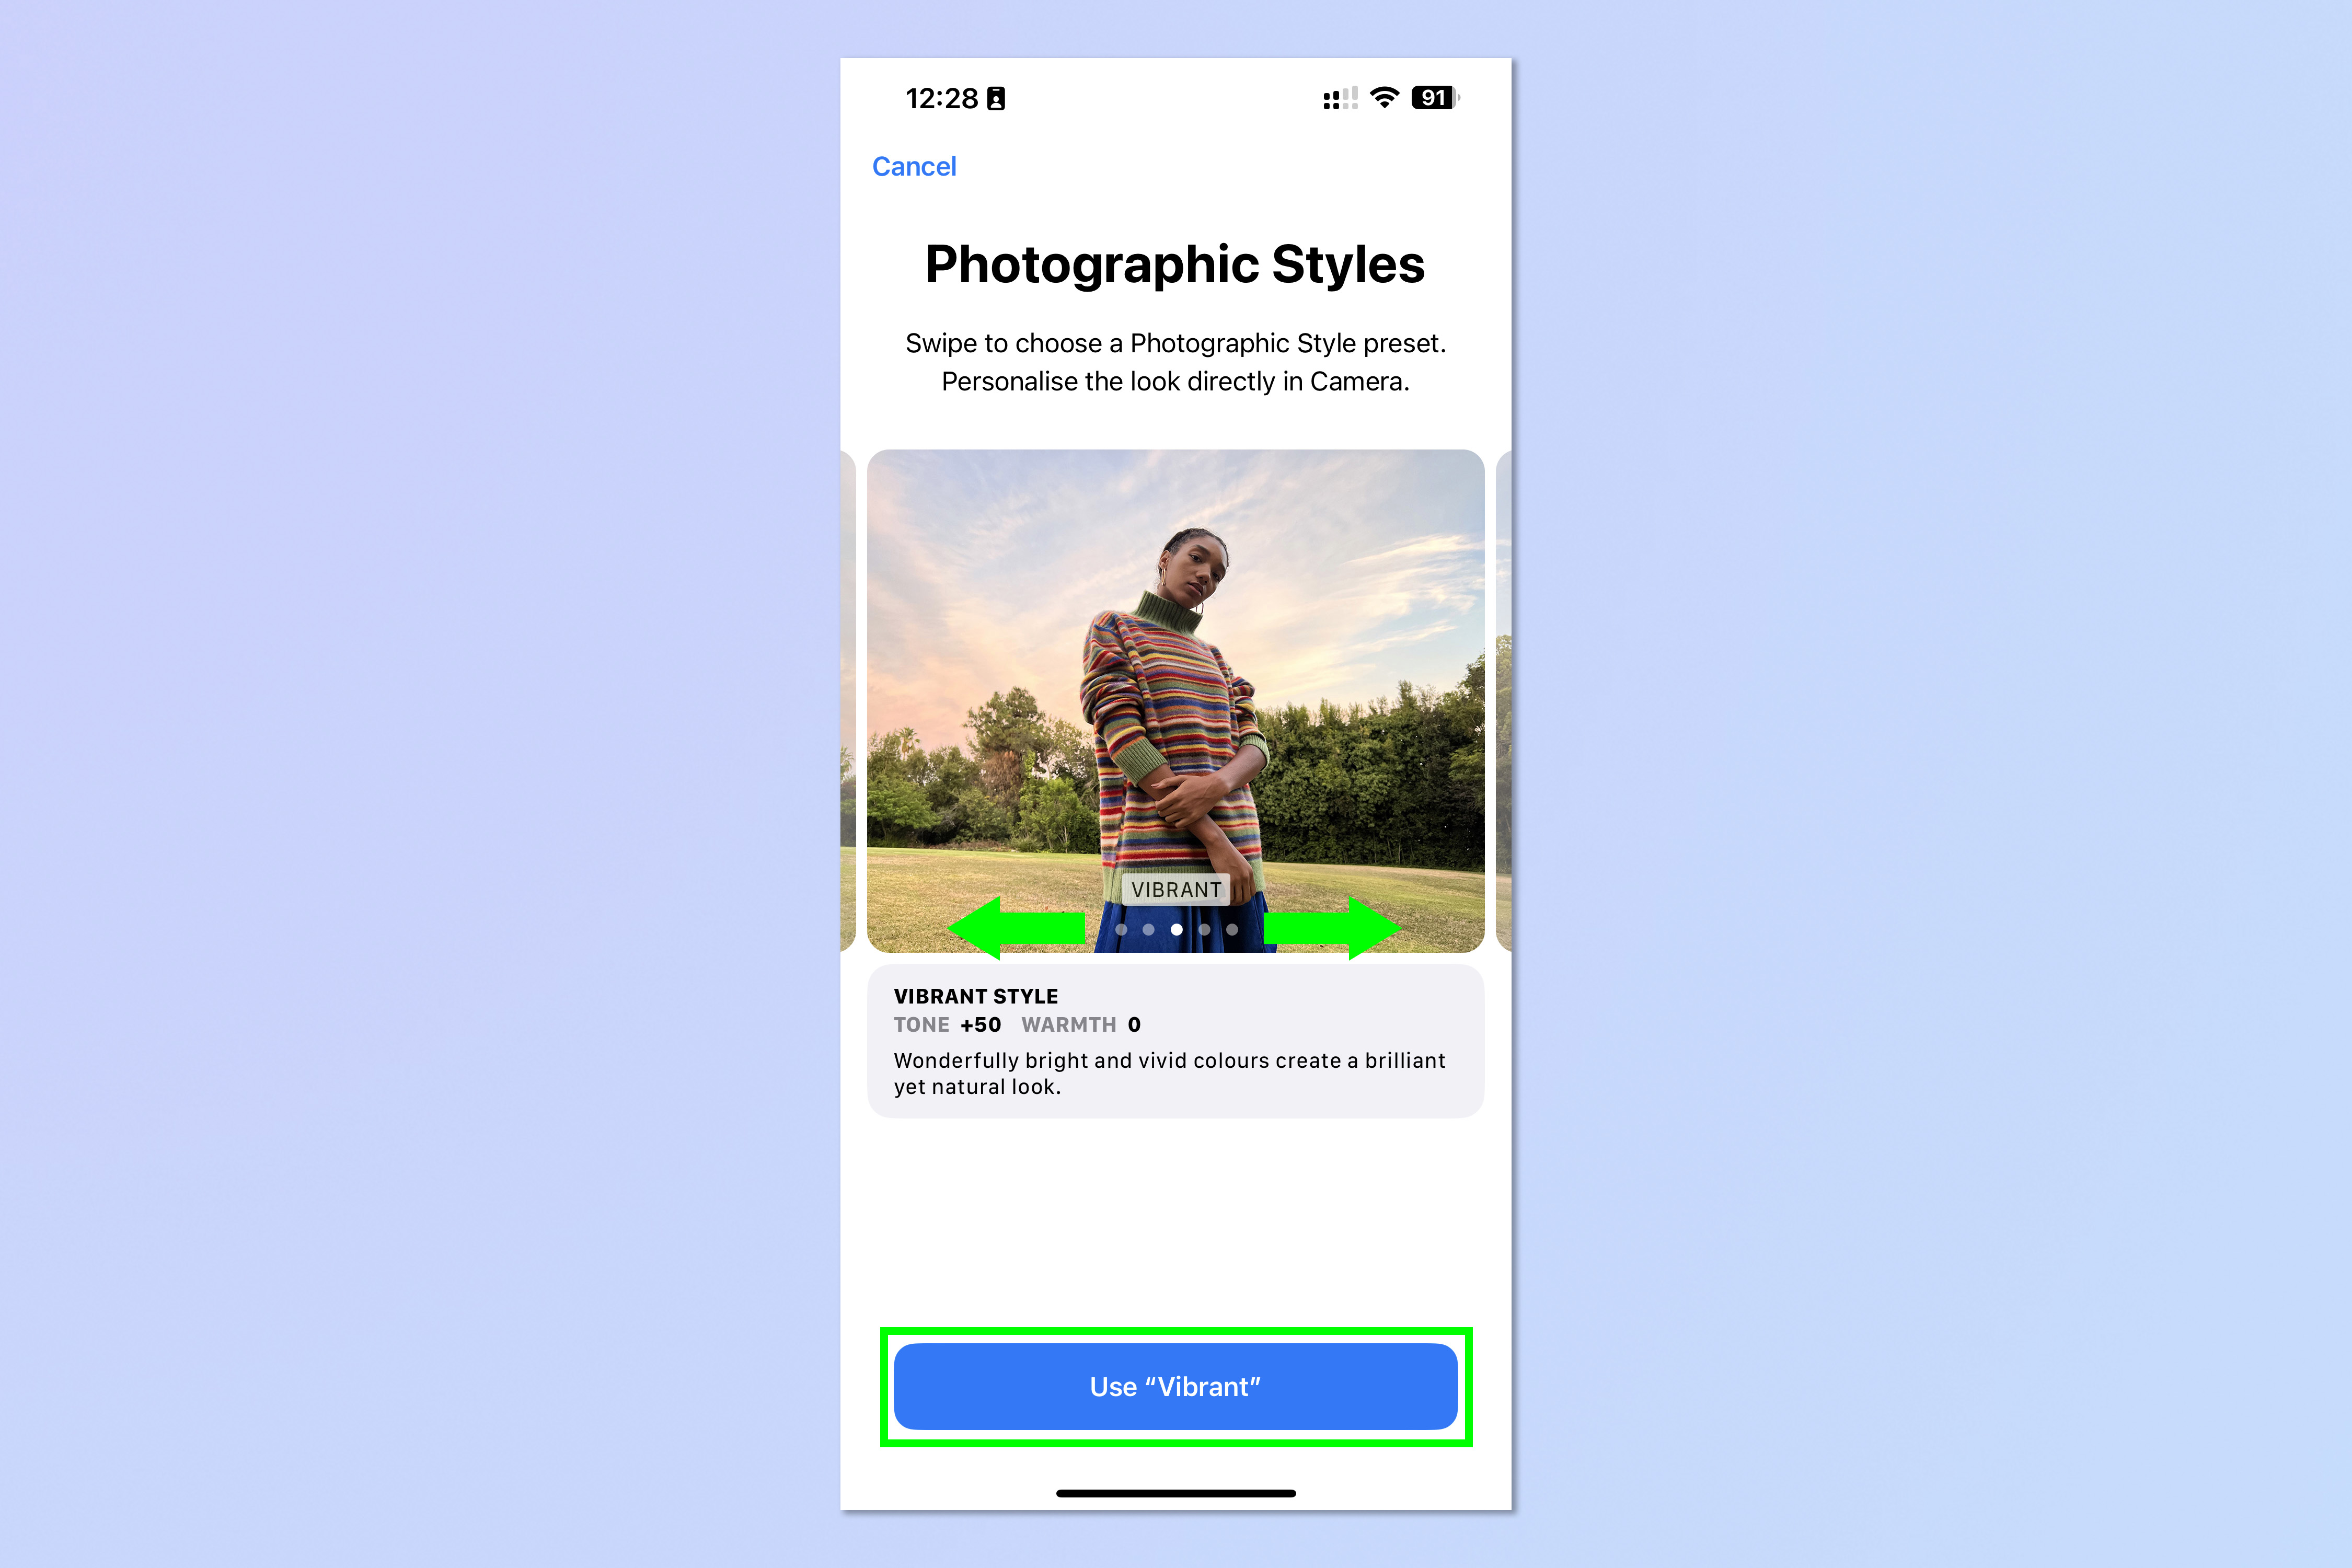 Снимок экрана, показывающий шаги, необходимые для установки фотографических стилей на iPhone.